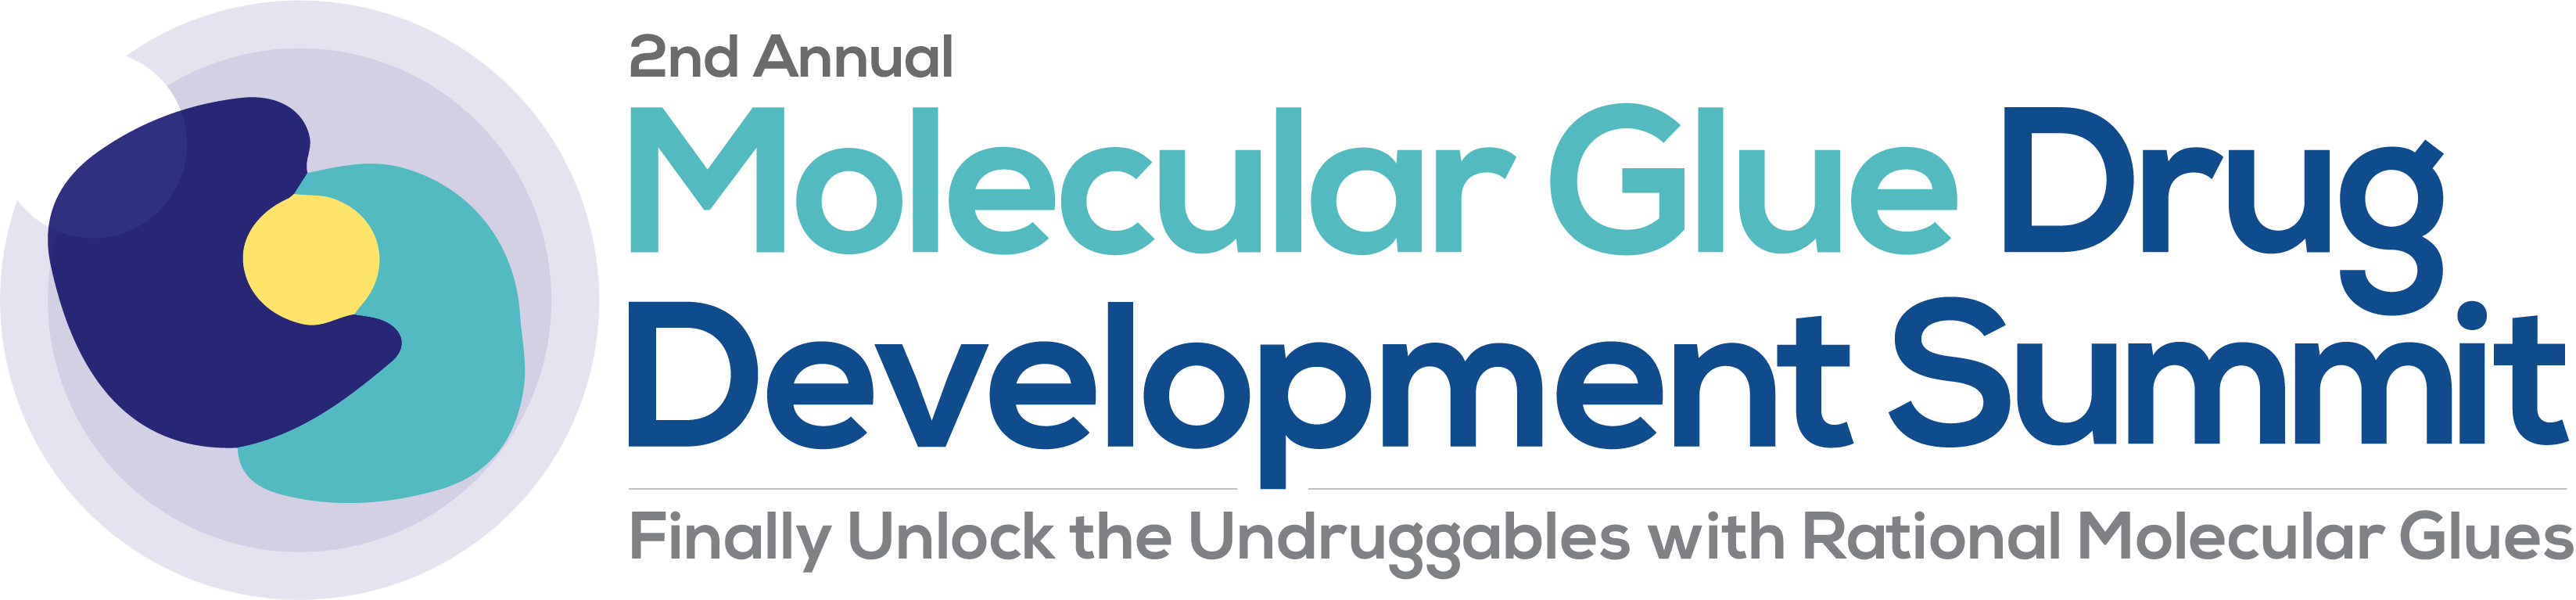 Molecular Glue Drug Development Summit Strapline